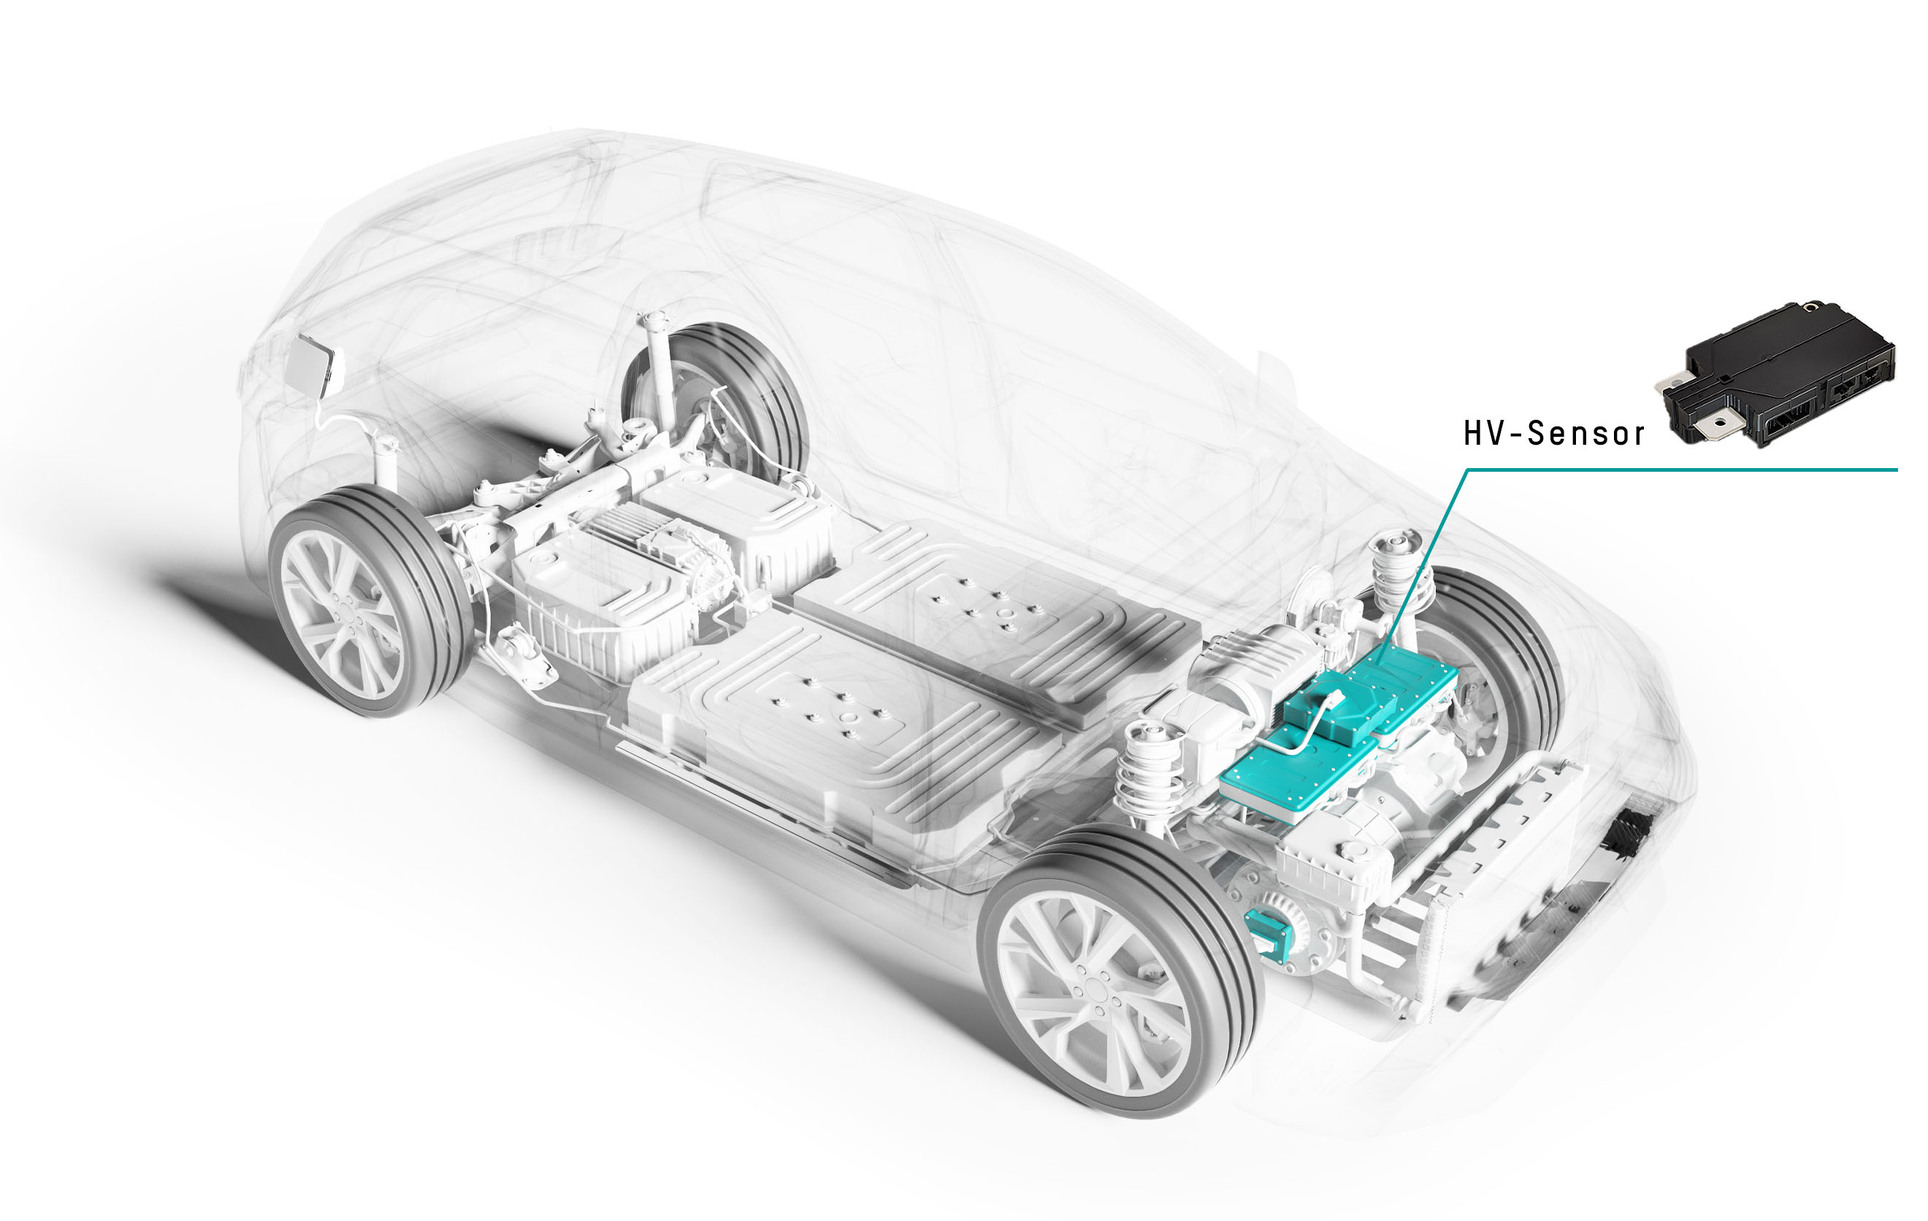 CAD-Rendering eines Elektroautos. Der Motor ist farblich hervorgehoben. Ein Pfeil zeigt an, wo der HV-Sensor von Marquardt eingebaut wird. Der HV-Sensor ist ebenfalls auf der Grafik abgebildet.